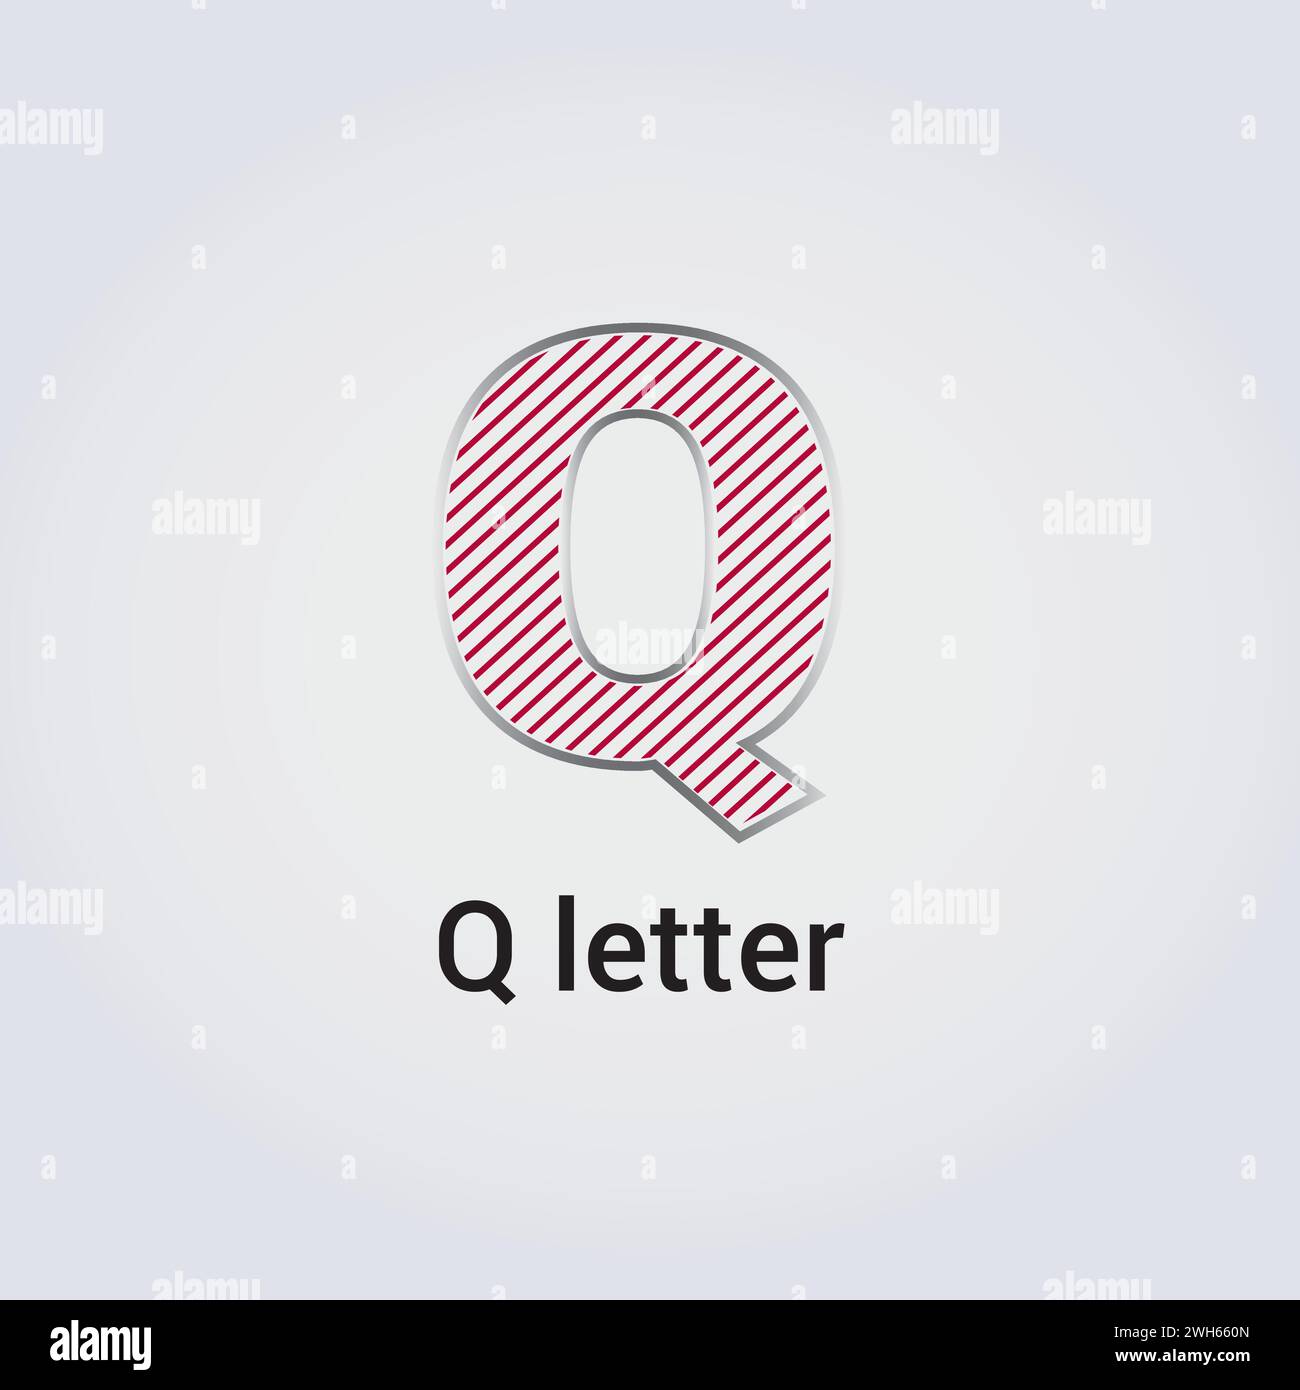 Q Design con icone a lettera Design con logo isolato singolo marchio identità aziendale vari colori modello modificabile simbolo a monogramma vettoriale illustrazione marchio Illustrazione Vettoriale